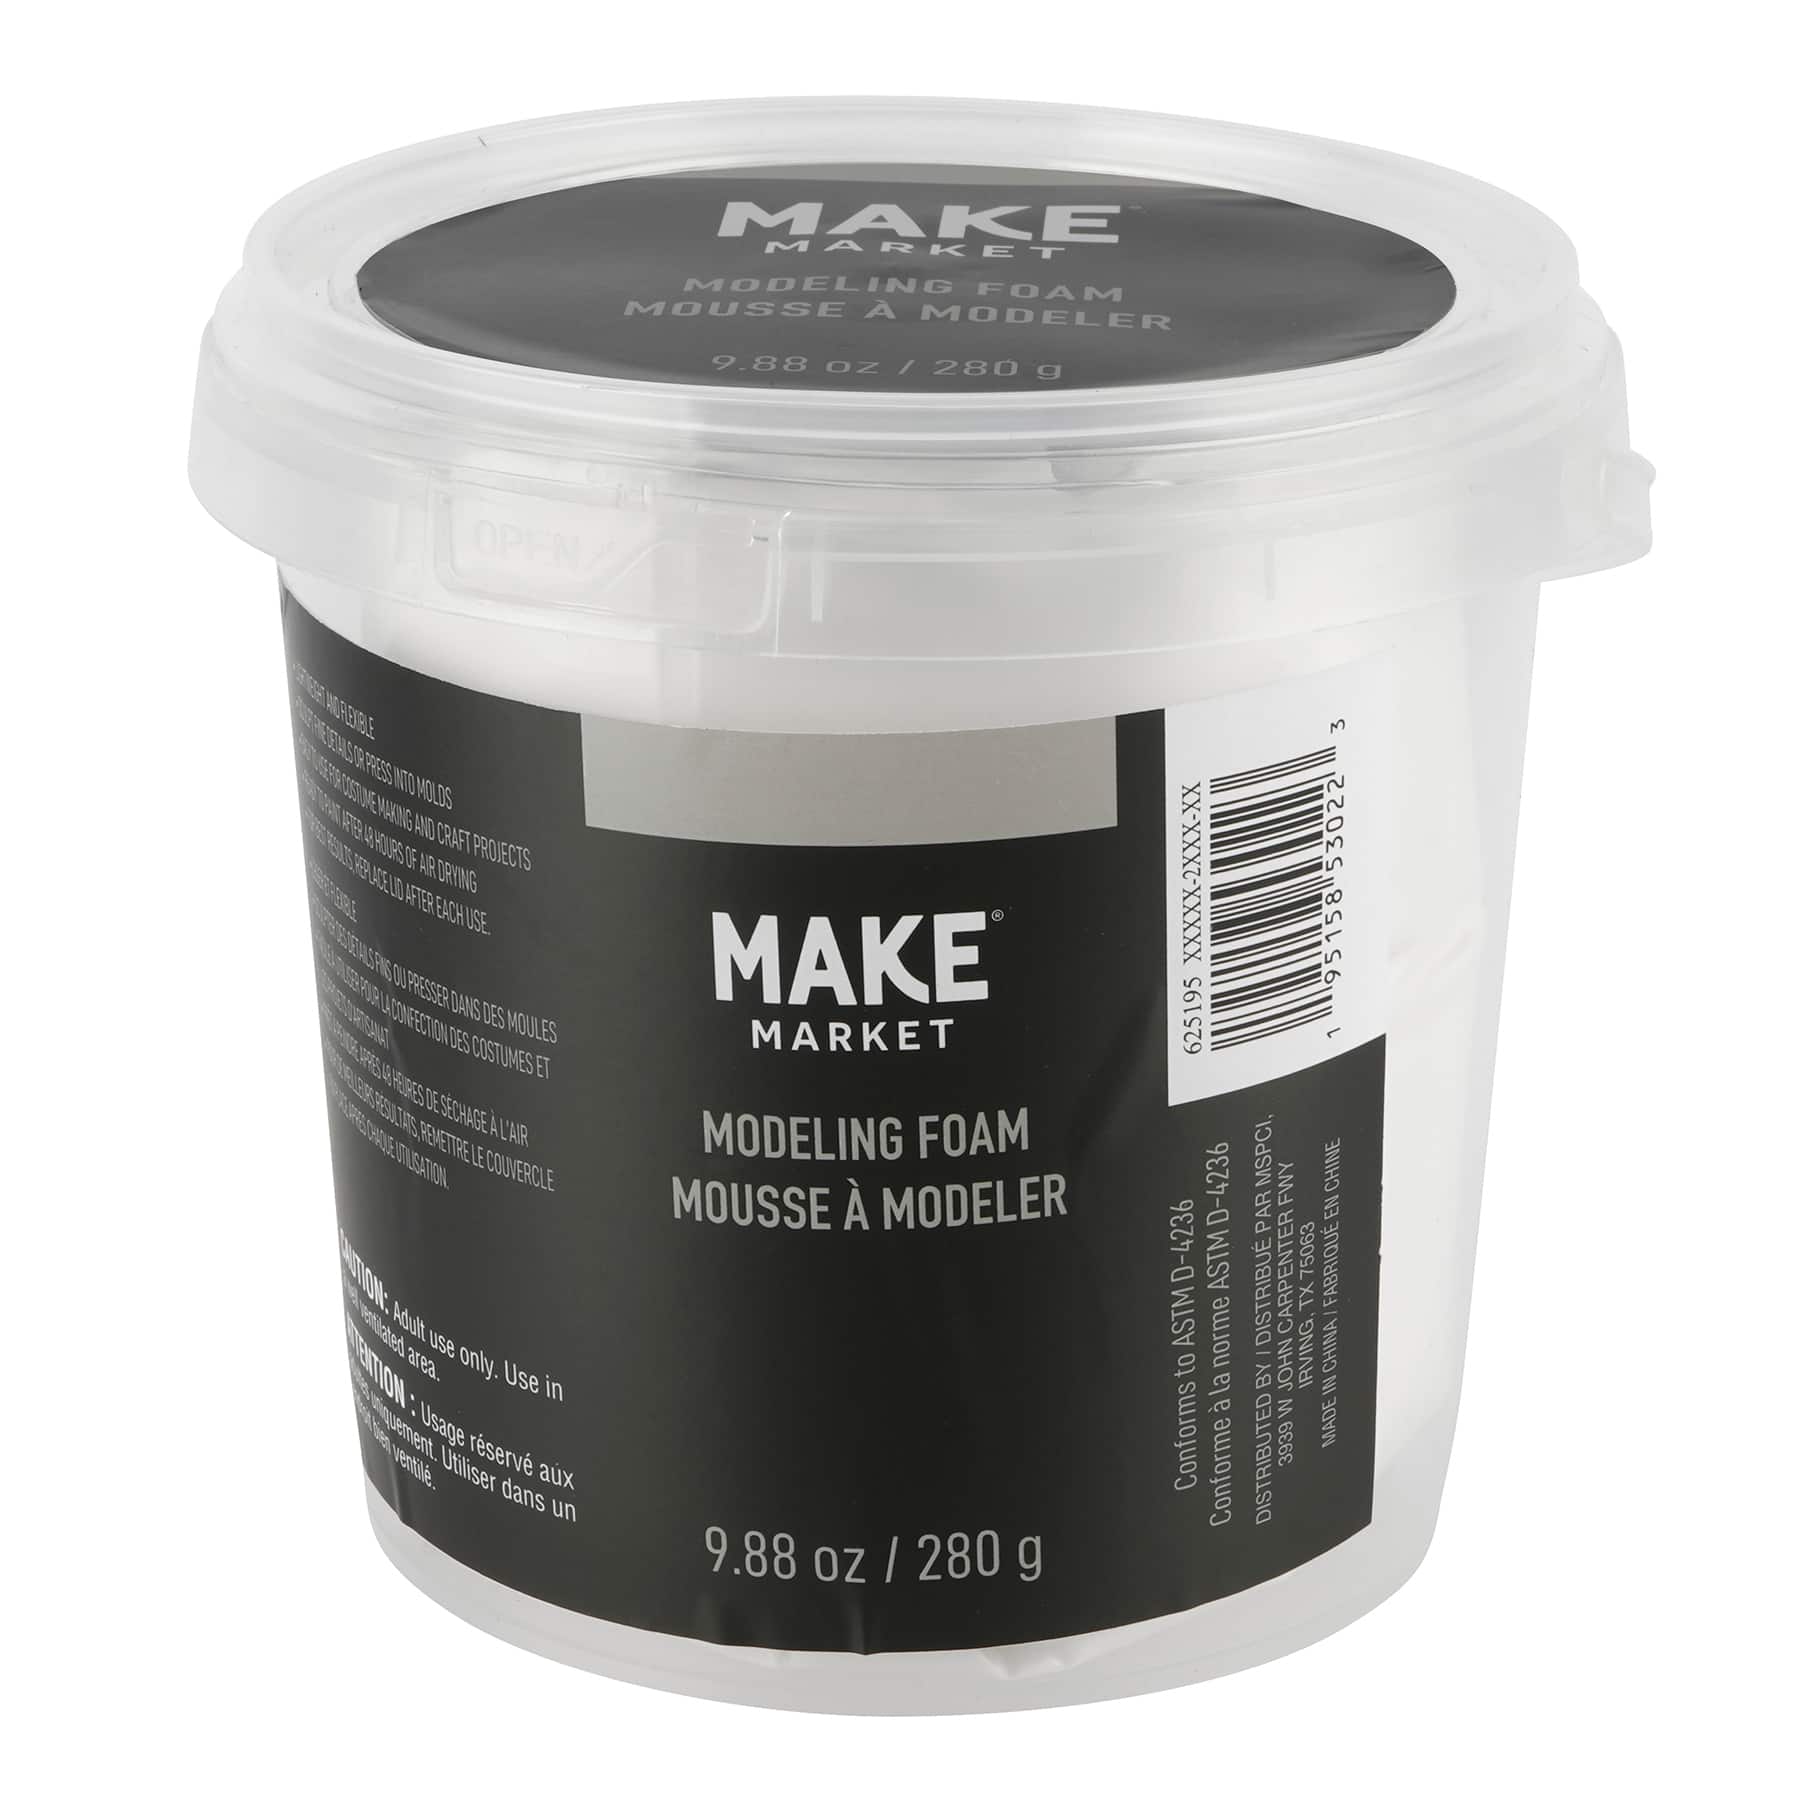 Modeling Foam by Make Market®